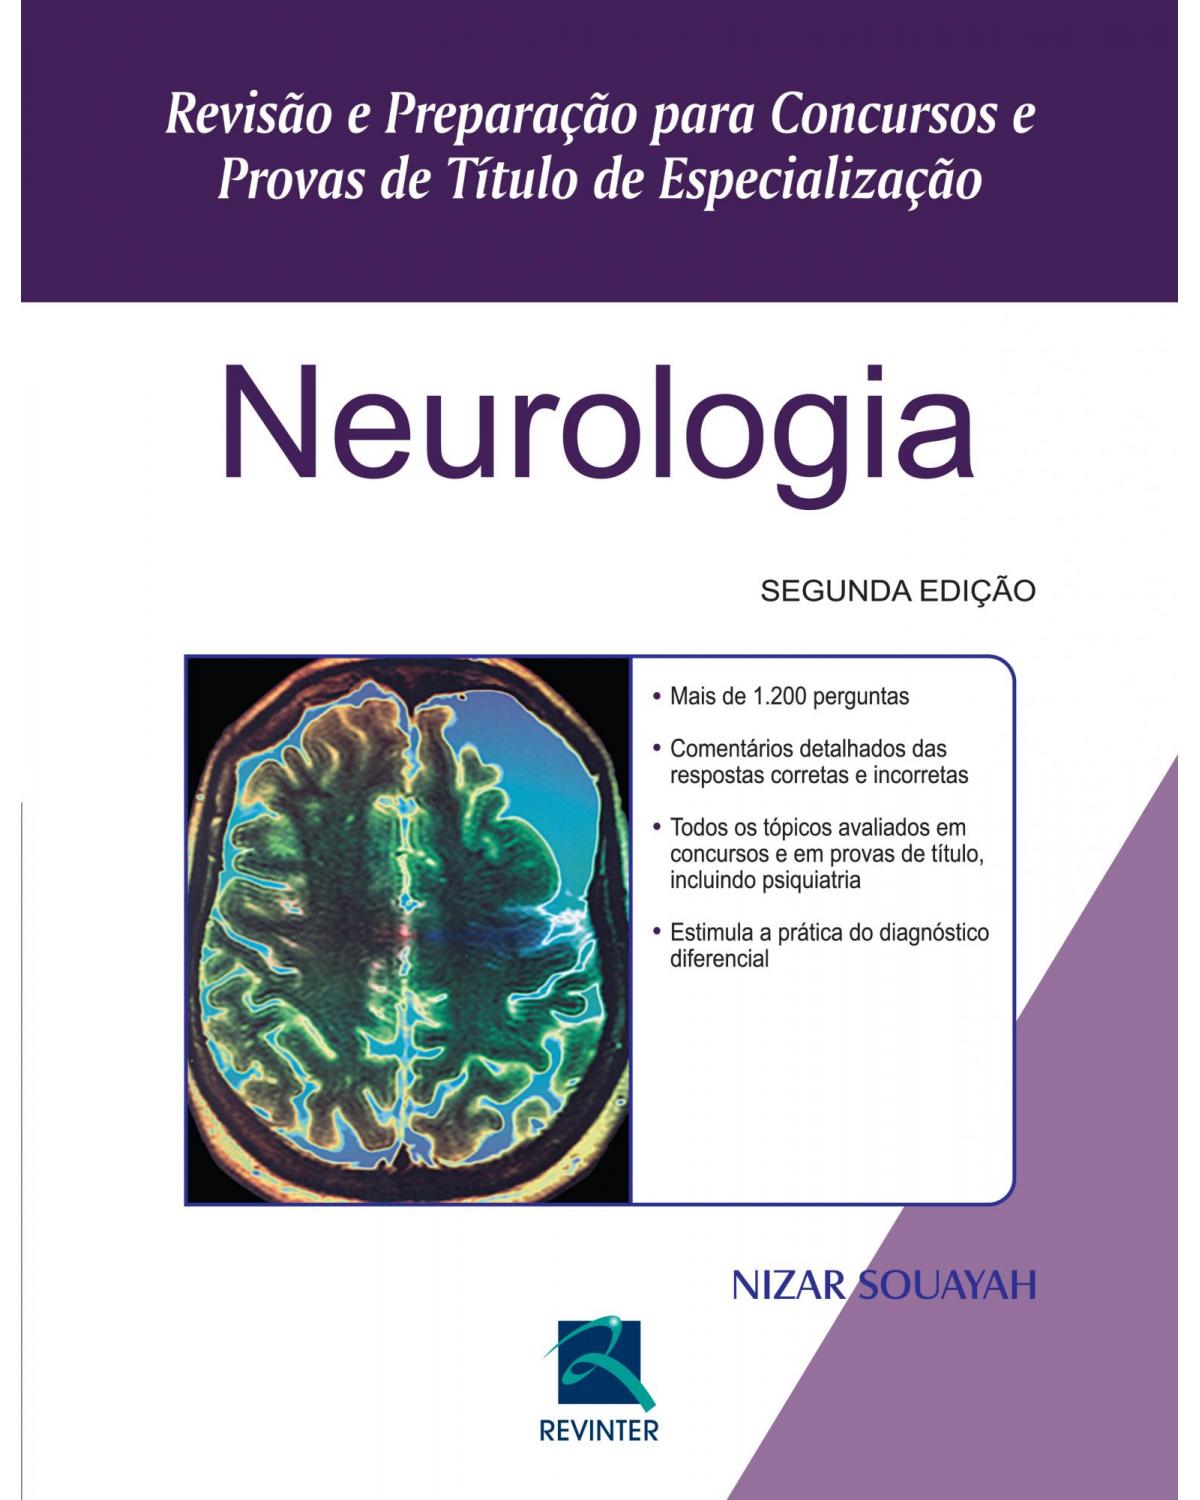 Neurologia - revisão e preparação para concursos e provas de título de especialização - 2ª Edição | 2015